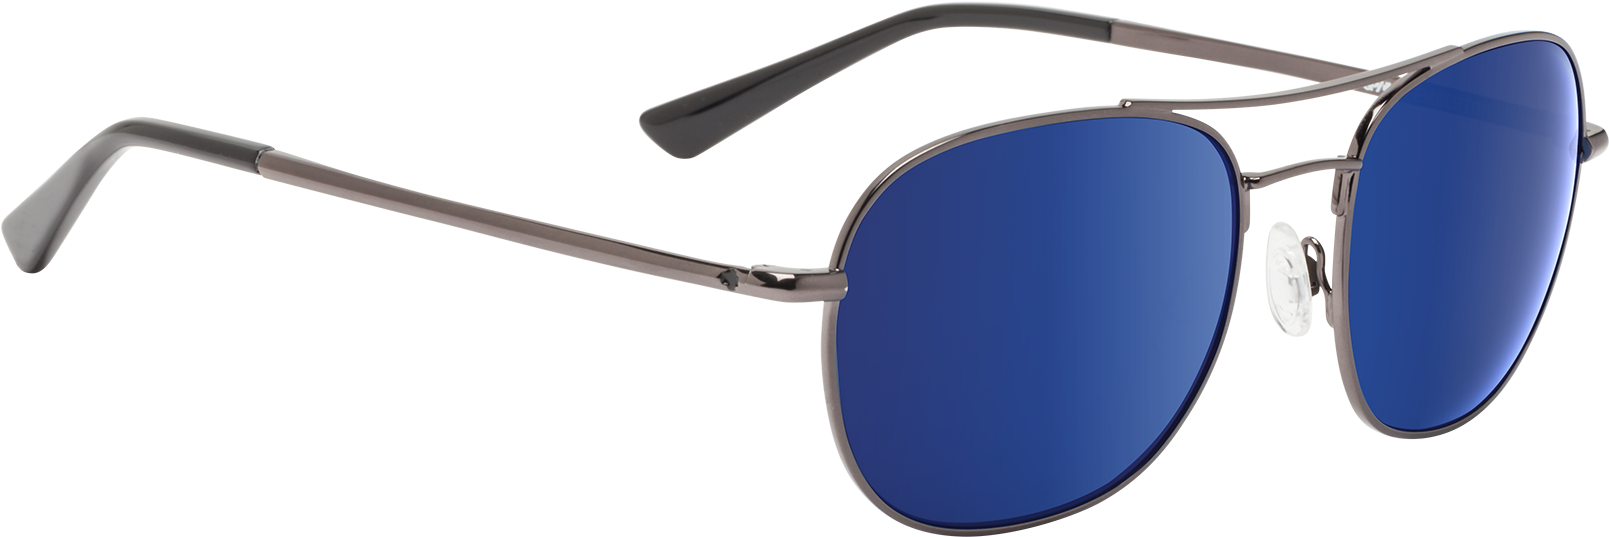 Blue Lens Aviator Sunglasses | PNGpix.com